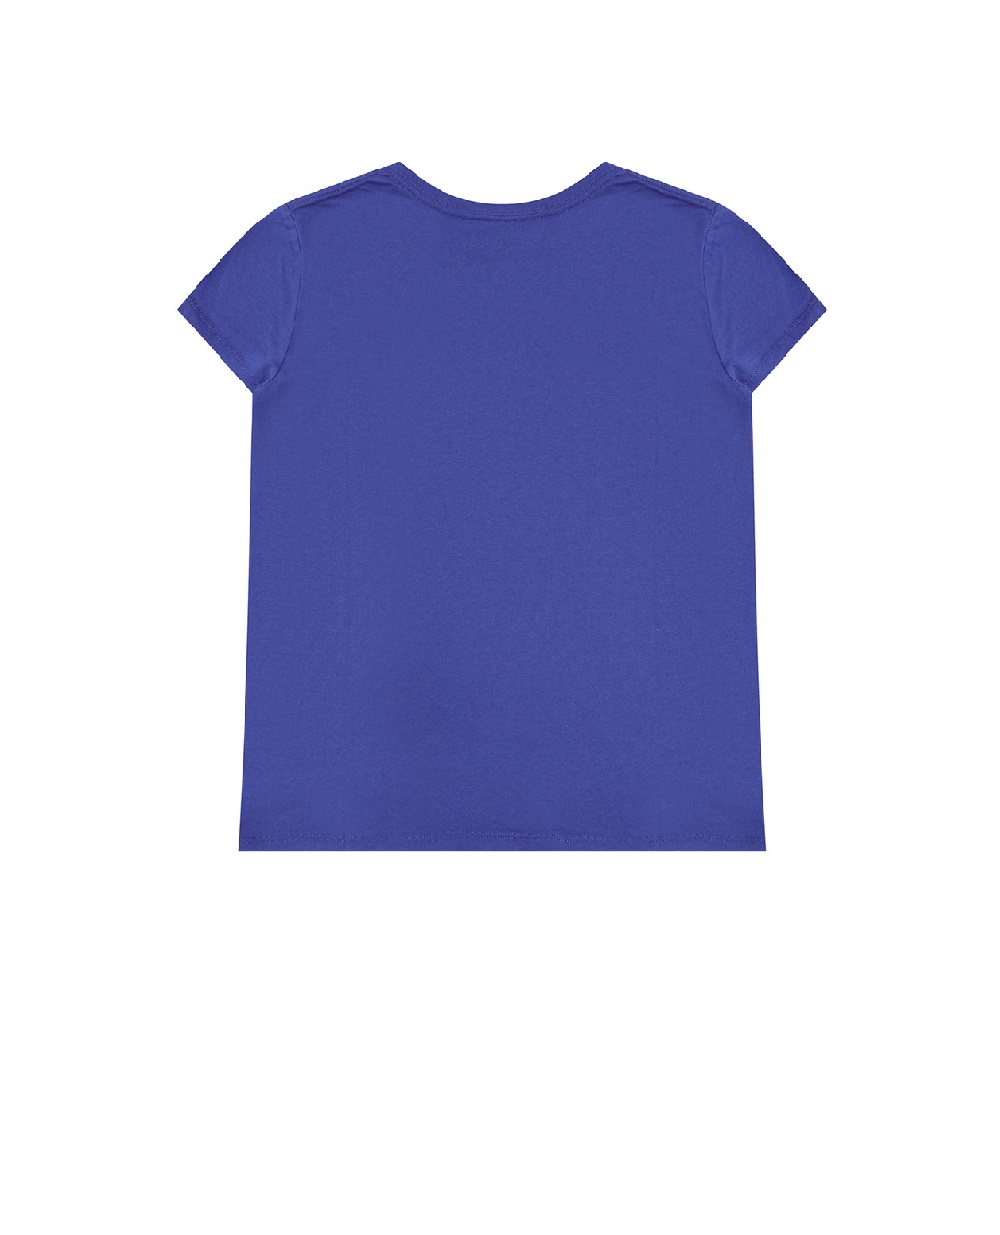 Детская футболка Polo Bear Polo Ralph Lauren Kids 311877857001, синий цвет • Купить в интернет-магазине Kameron